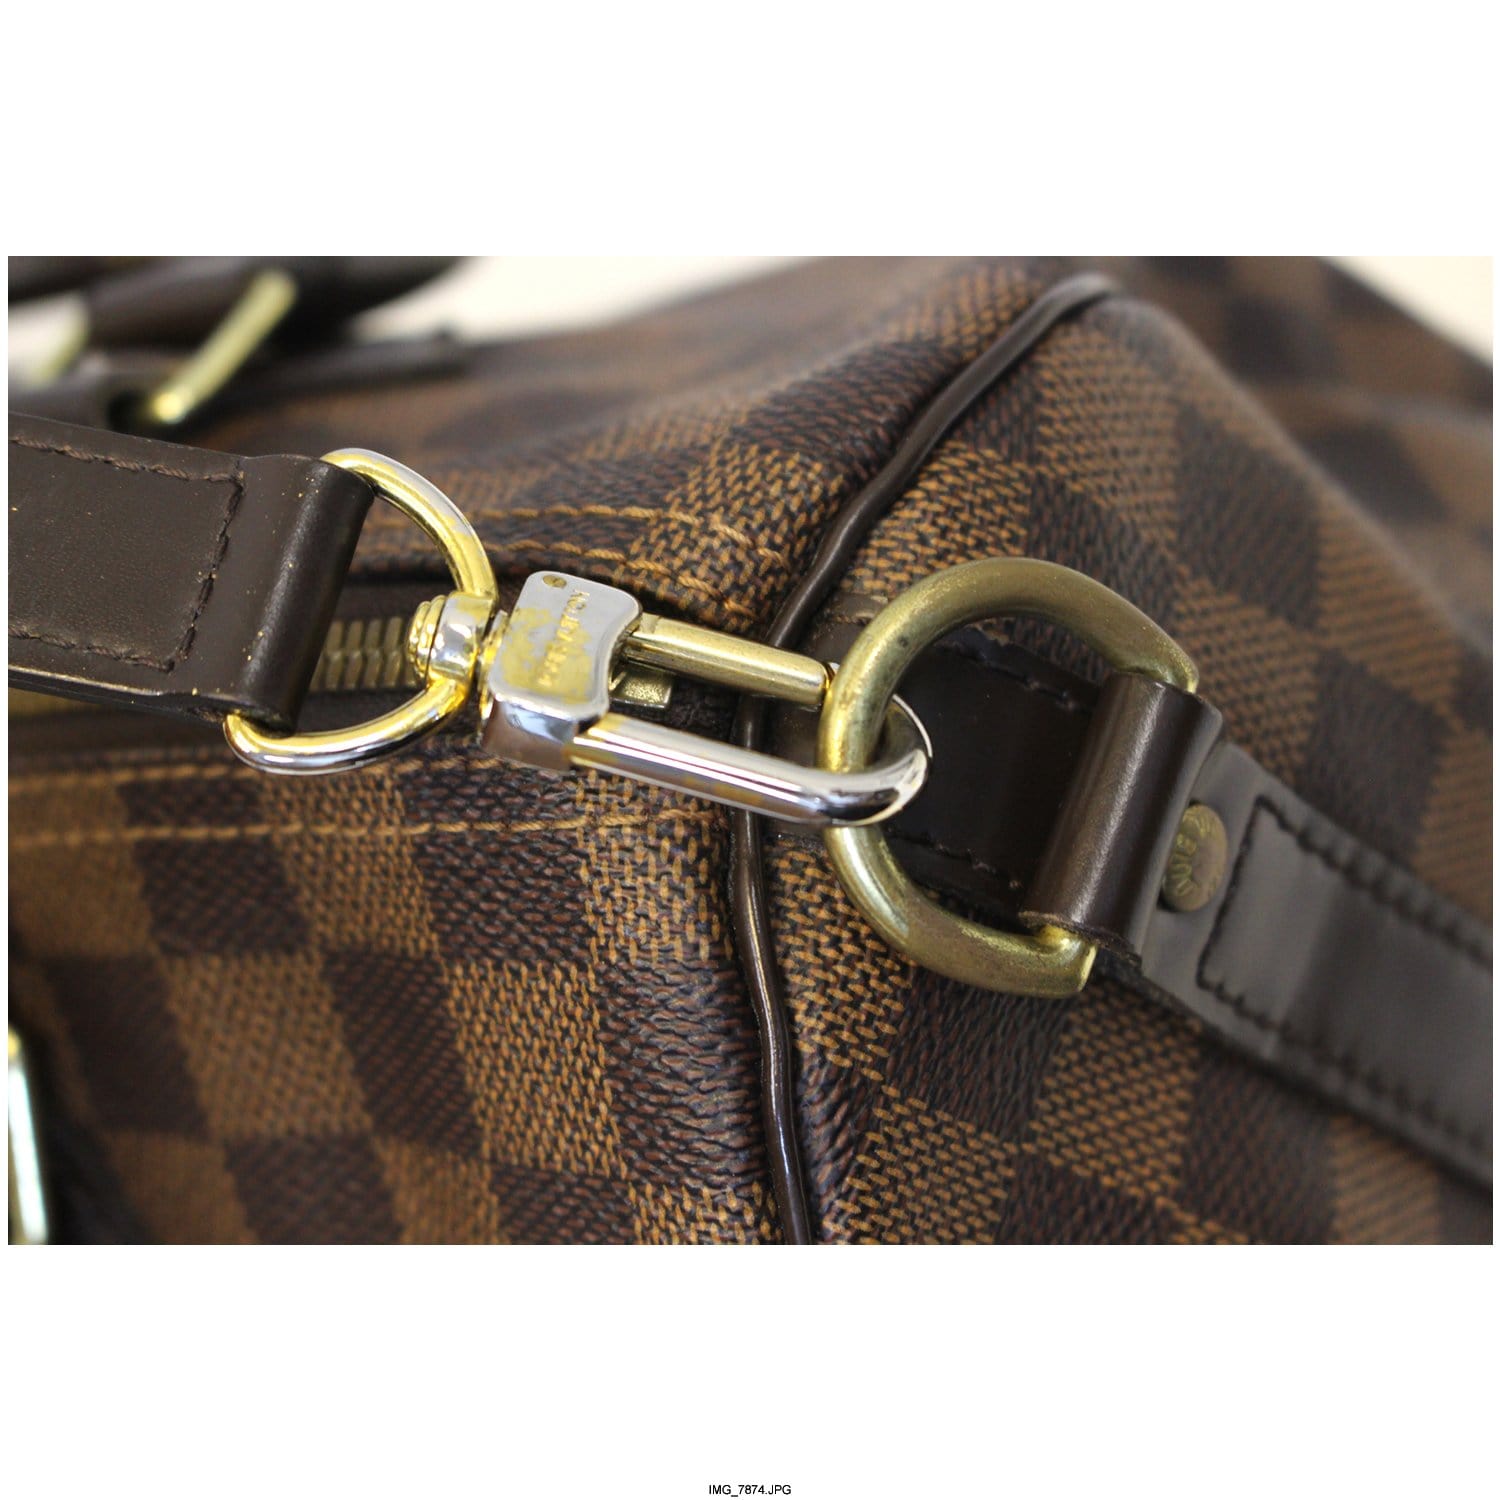 Louis Vuitton Speedy Bandouliere Damier Ebene 30 Brown in Canvas